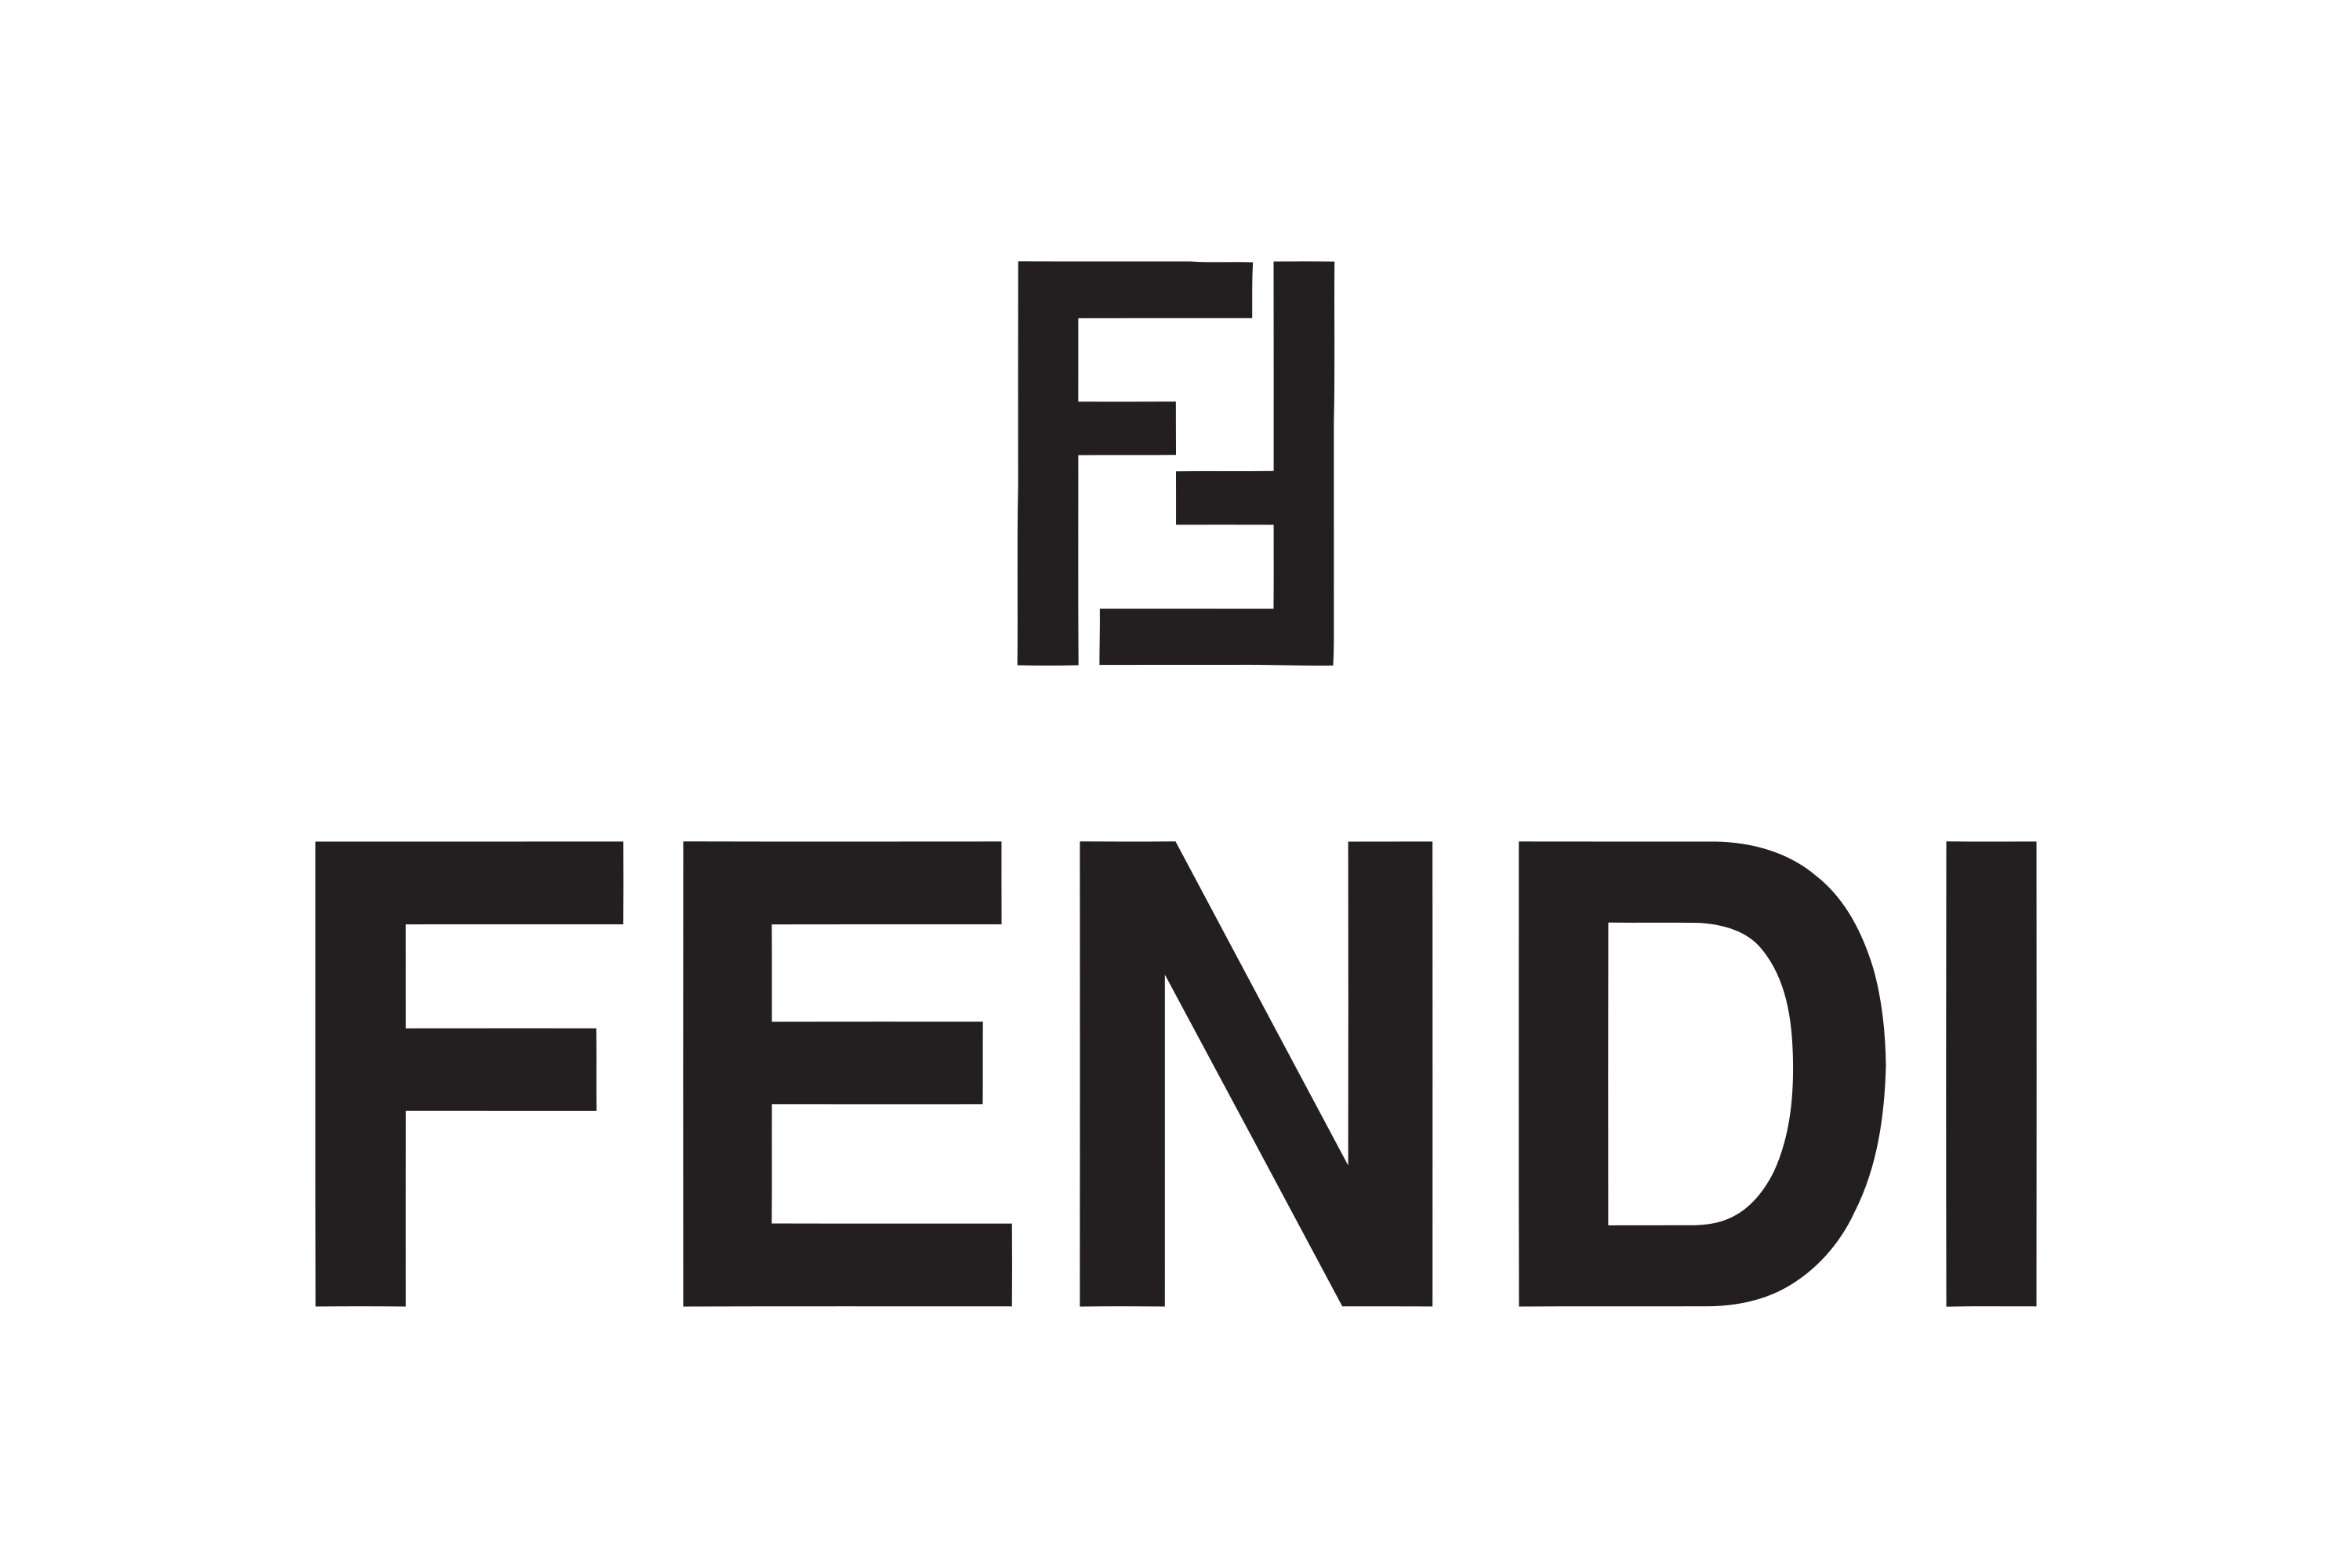 Download Fendi Logo in SVG Vector or PNG File Format - Logo.wine